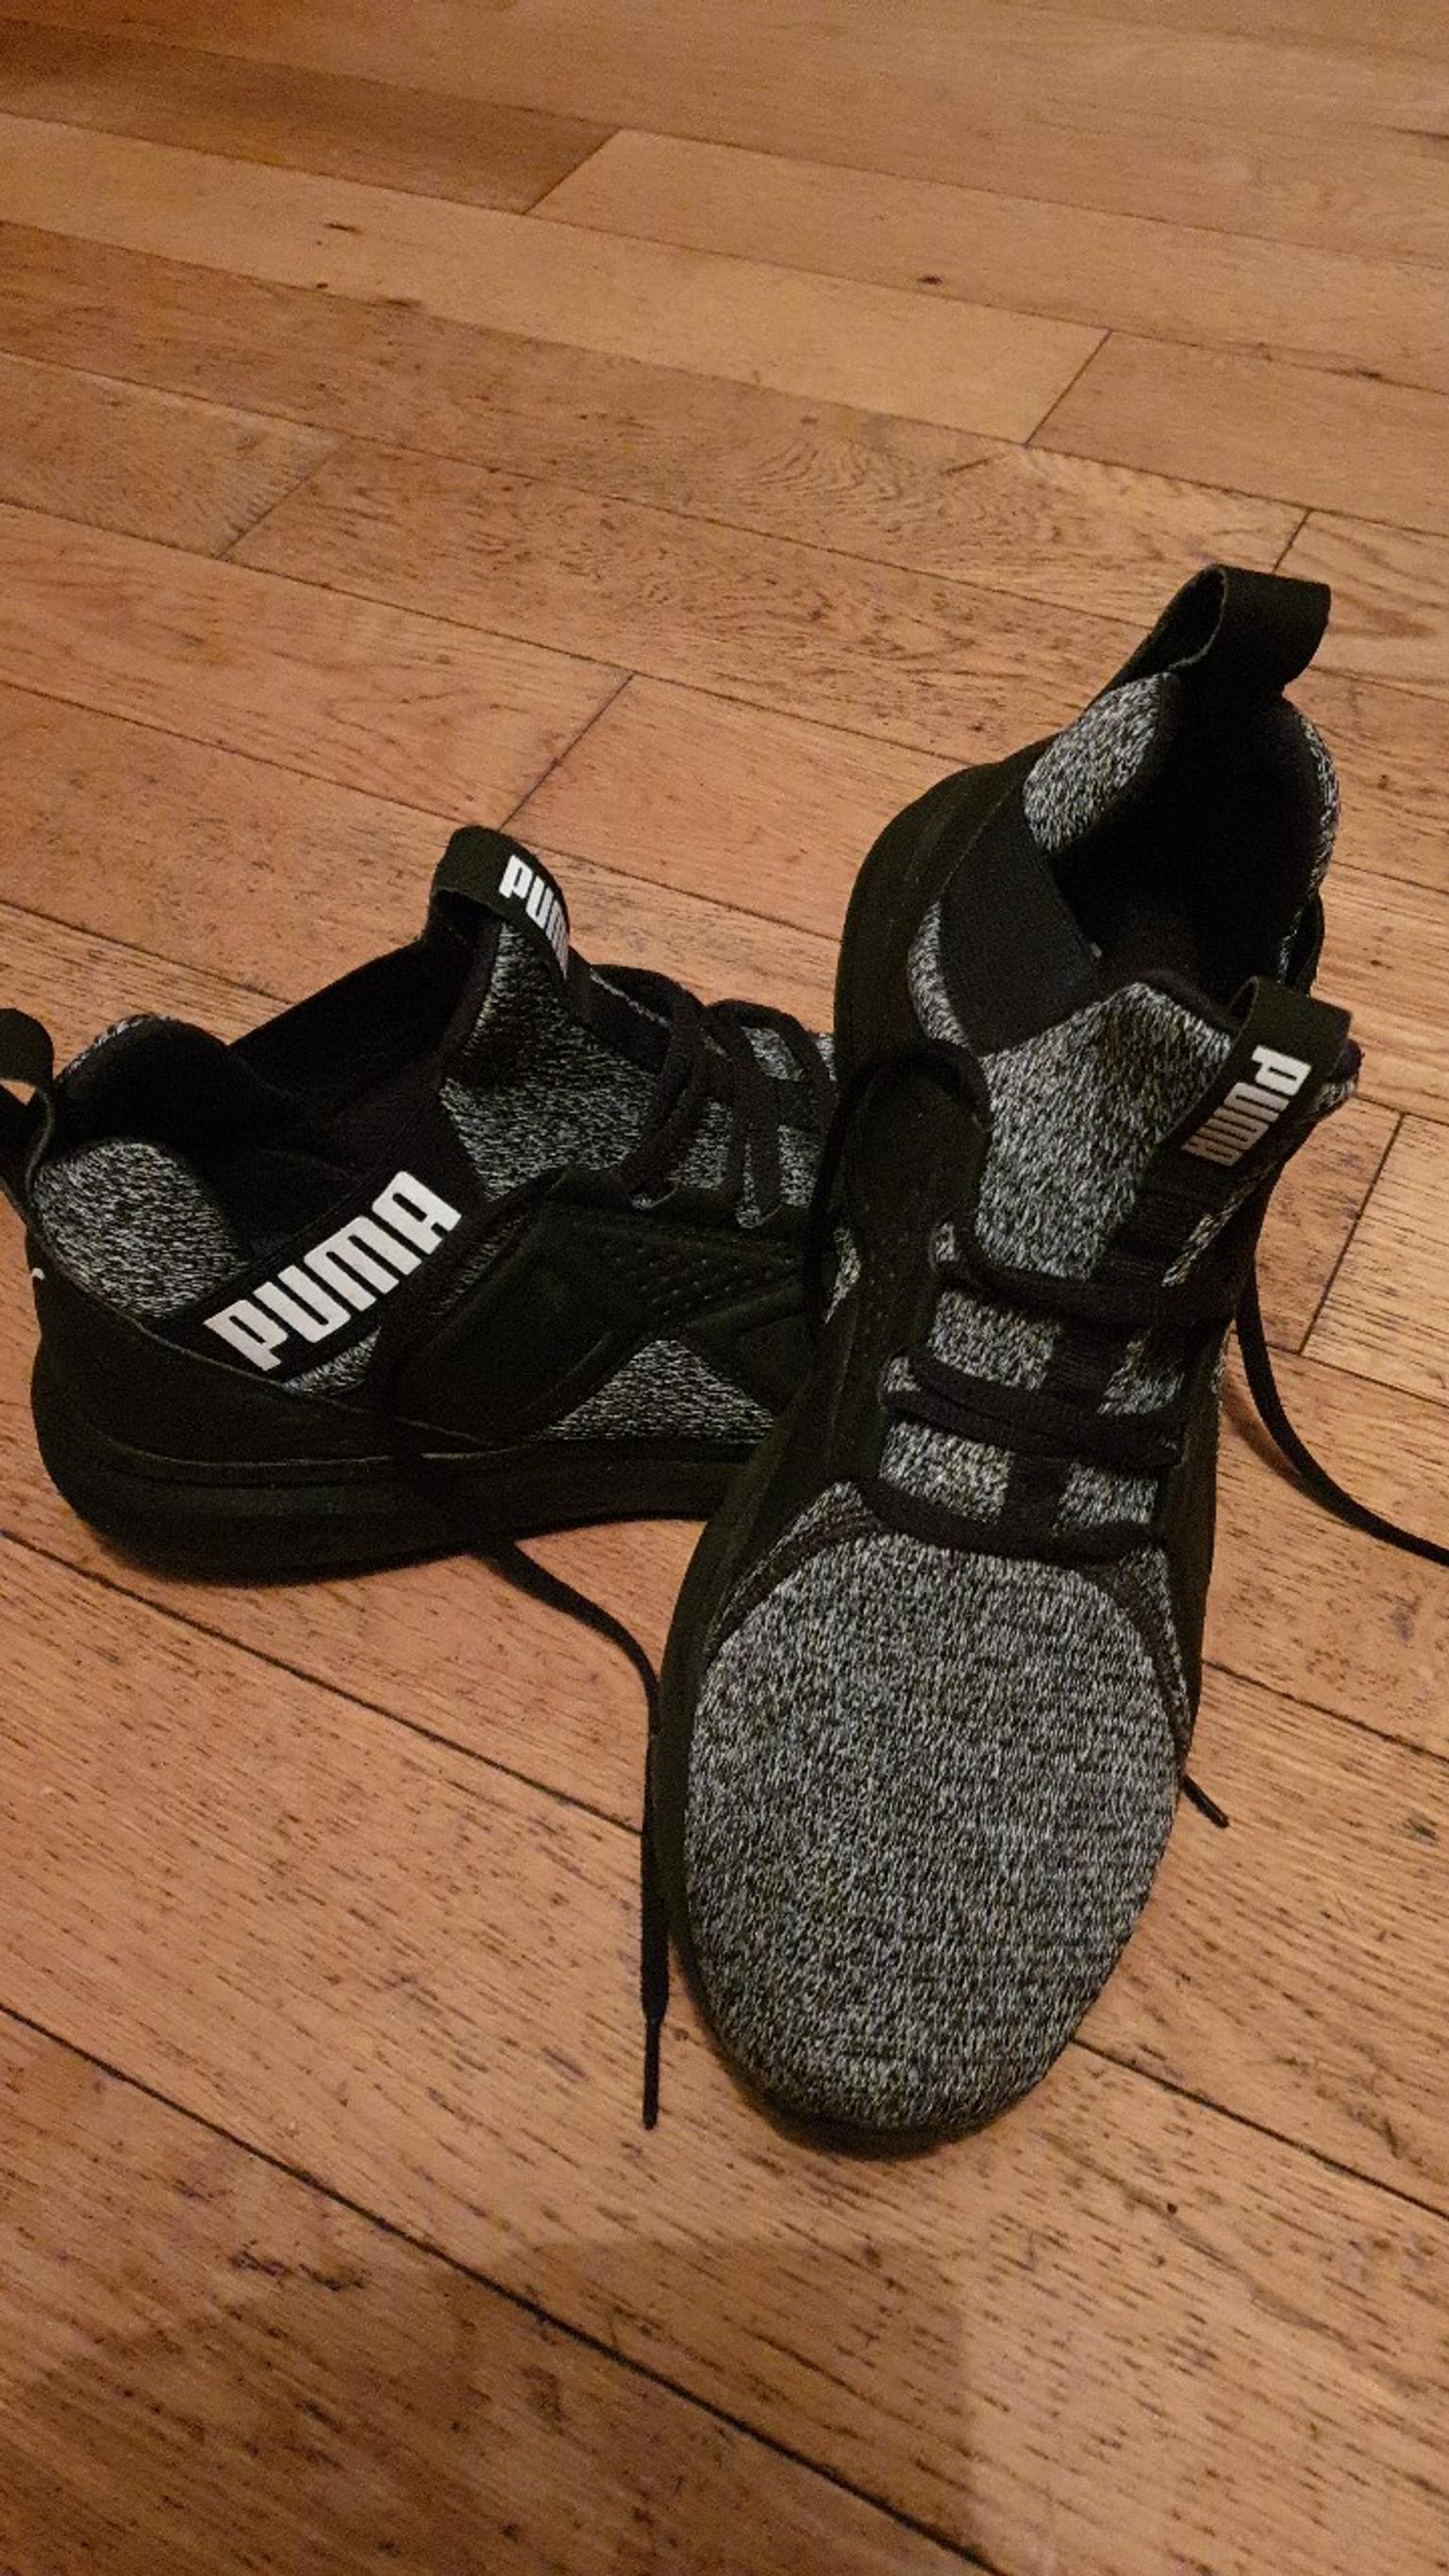 puma soft foam optimal comfort shoes